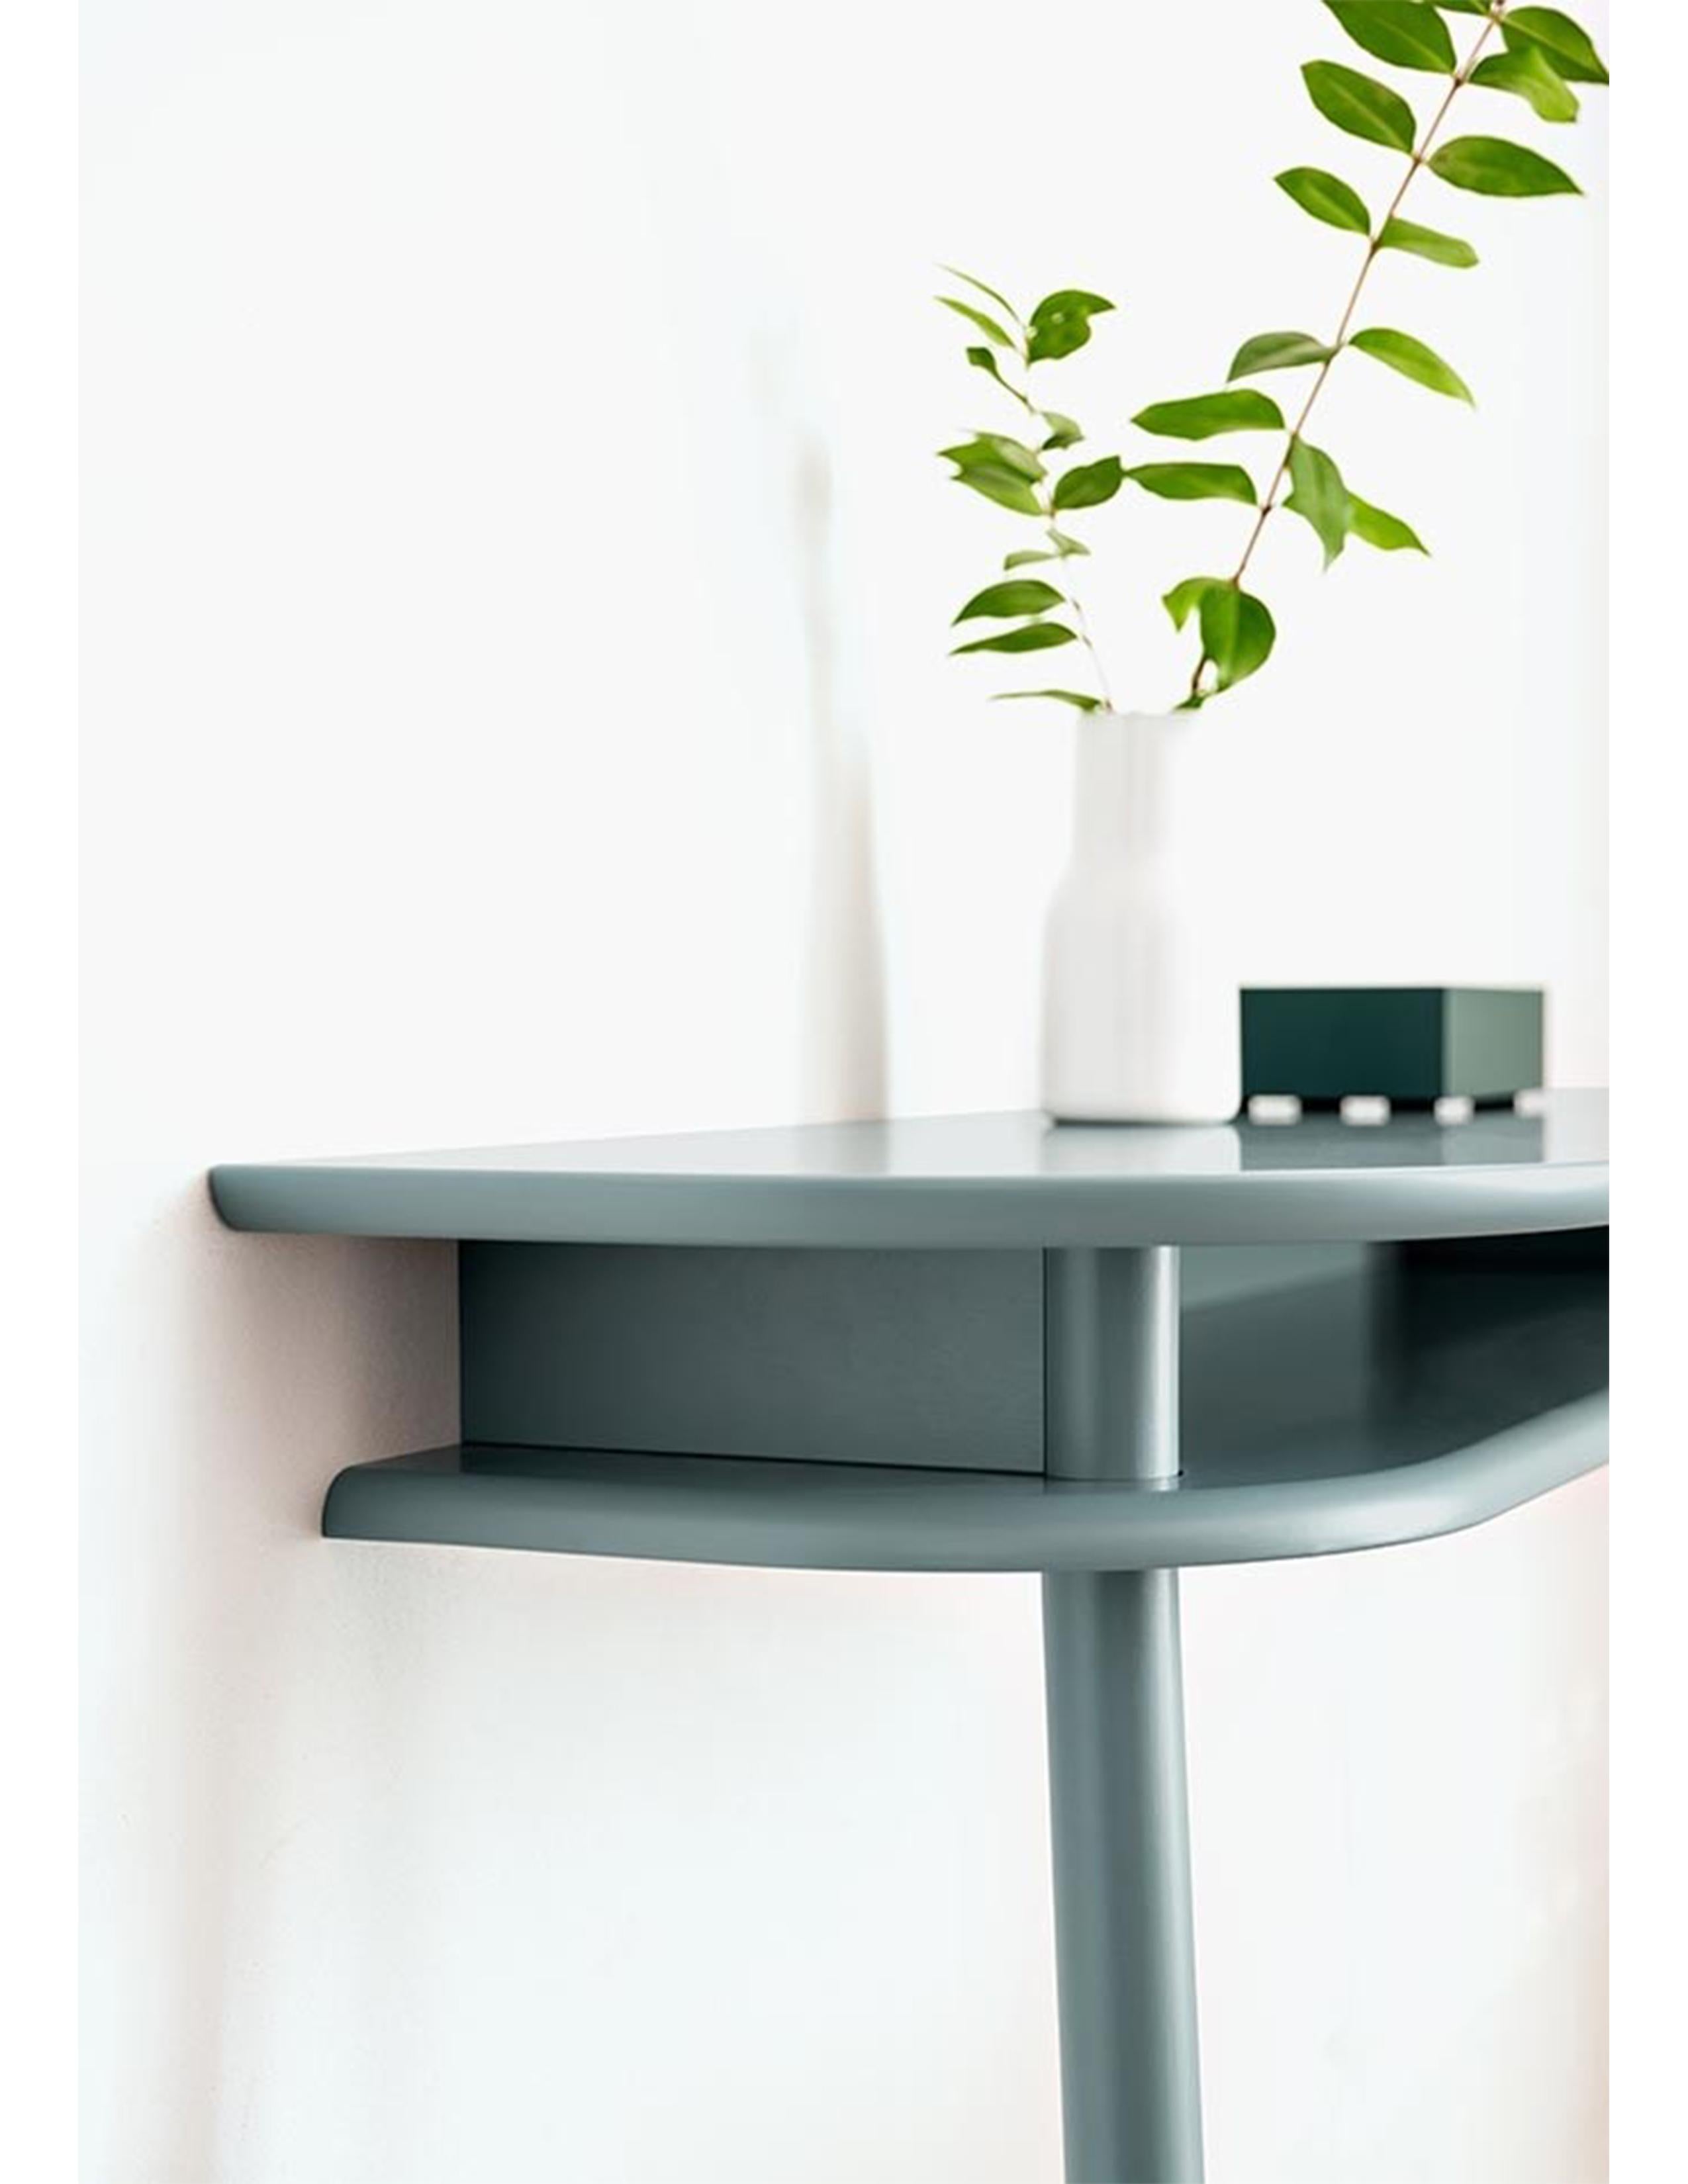 La table de la ligne BUREAU allie une modernité claire à une classe intemporelle, ses lignes arrondies étant un élément clé du design. BUREAU est la taille idéale pour une table de salle à manger, mais constitue également une vitrine idéale pour des